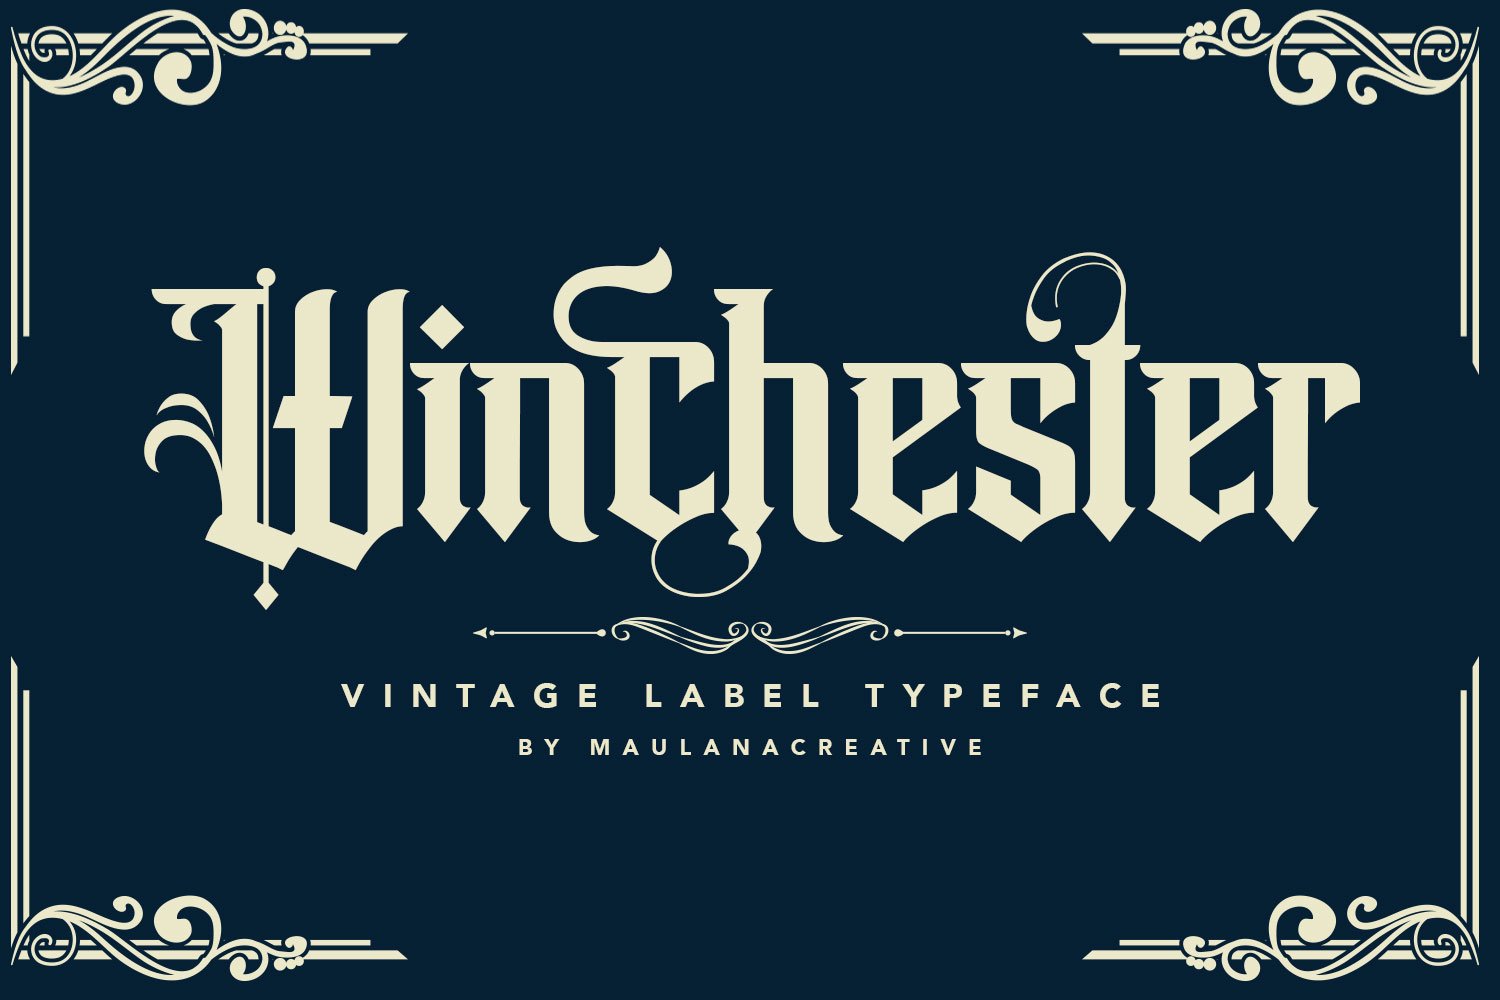 Winchester Blackletter Vintage Label cover image.